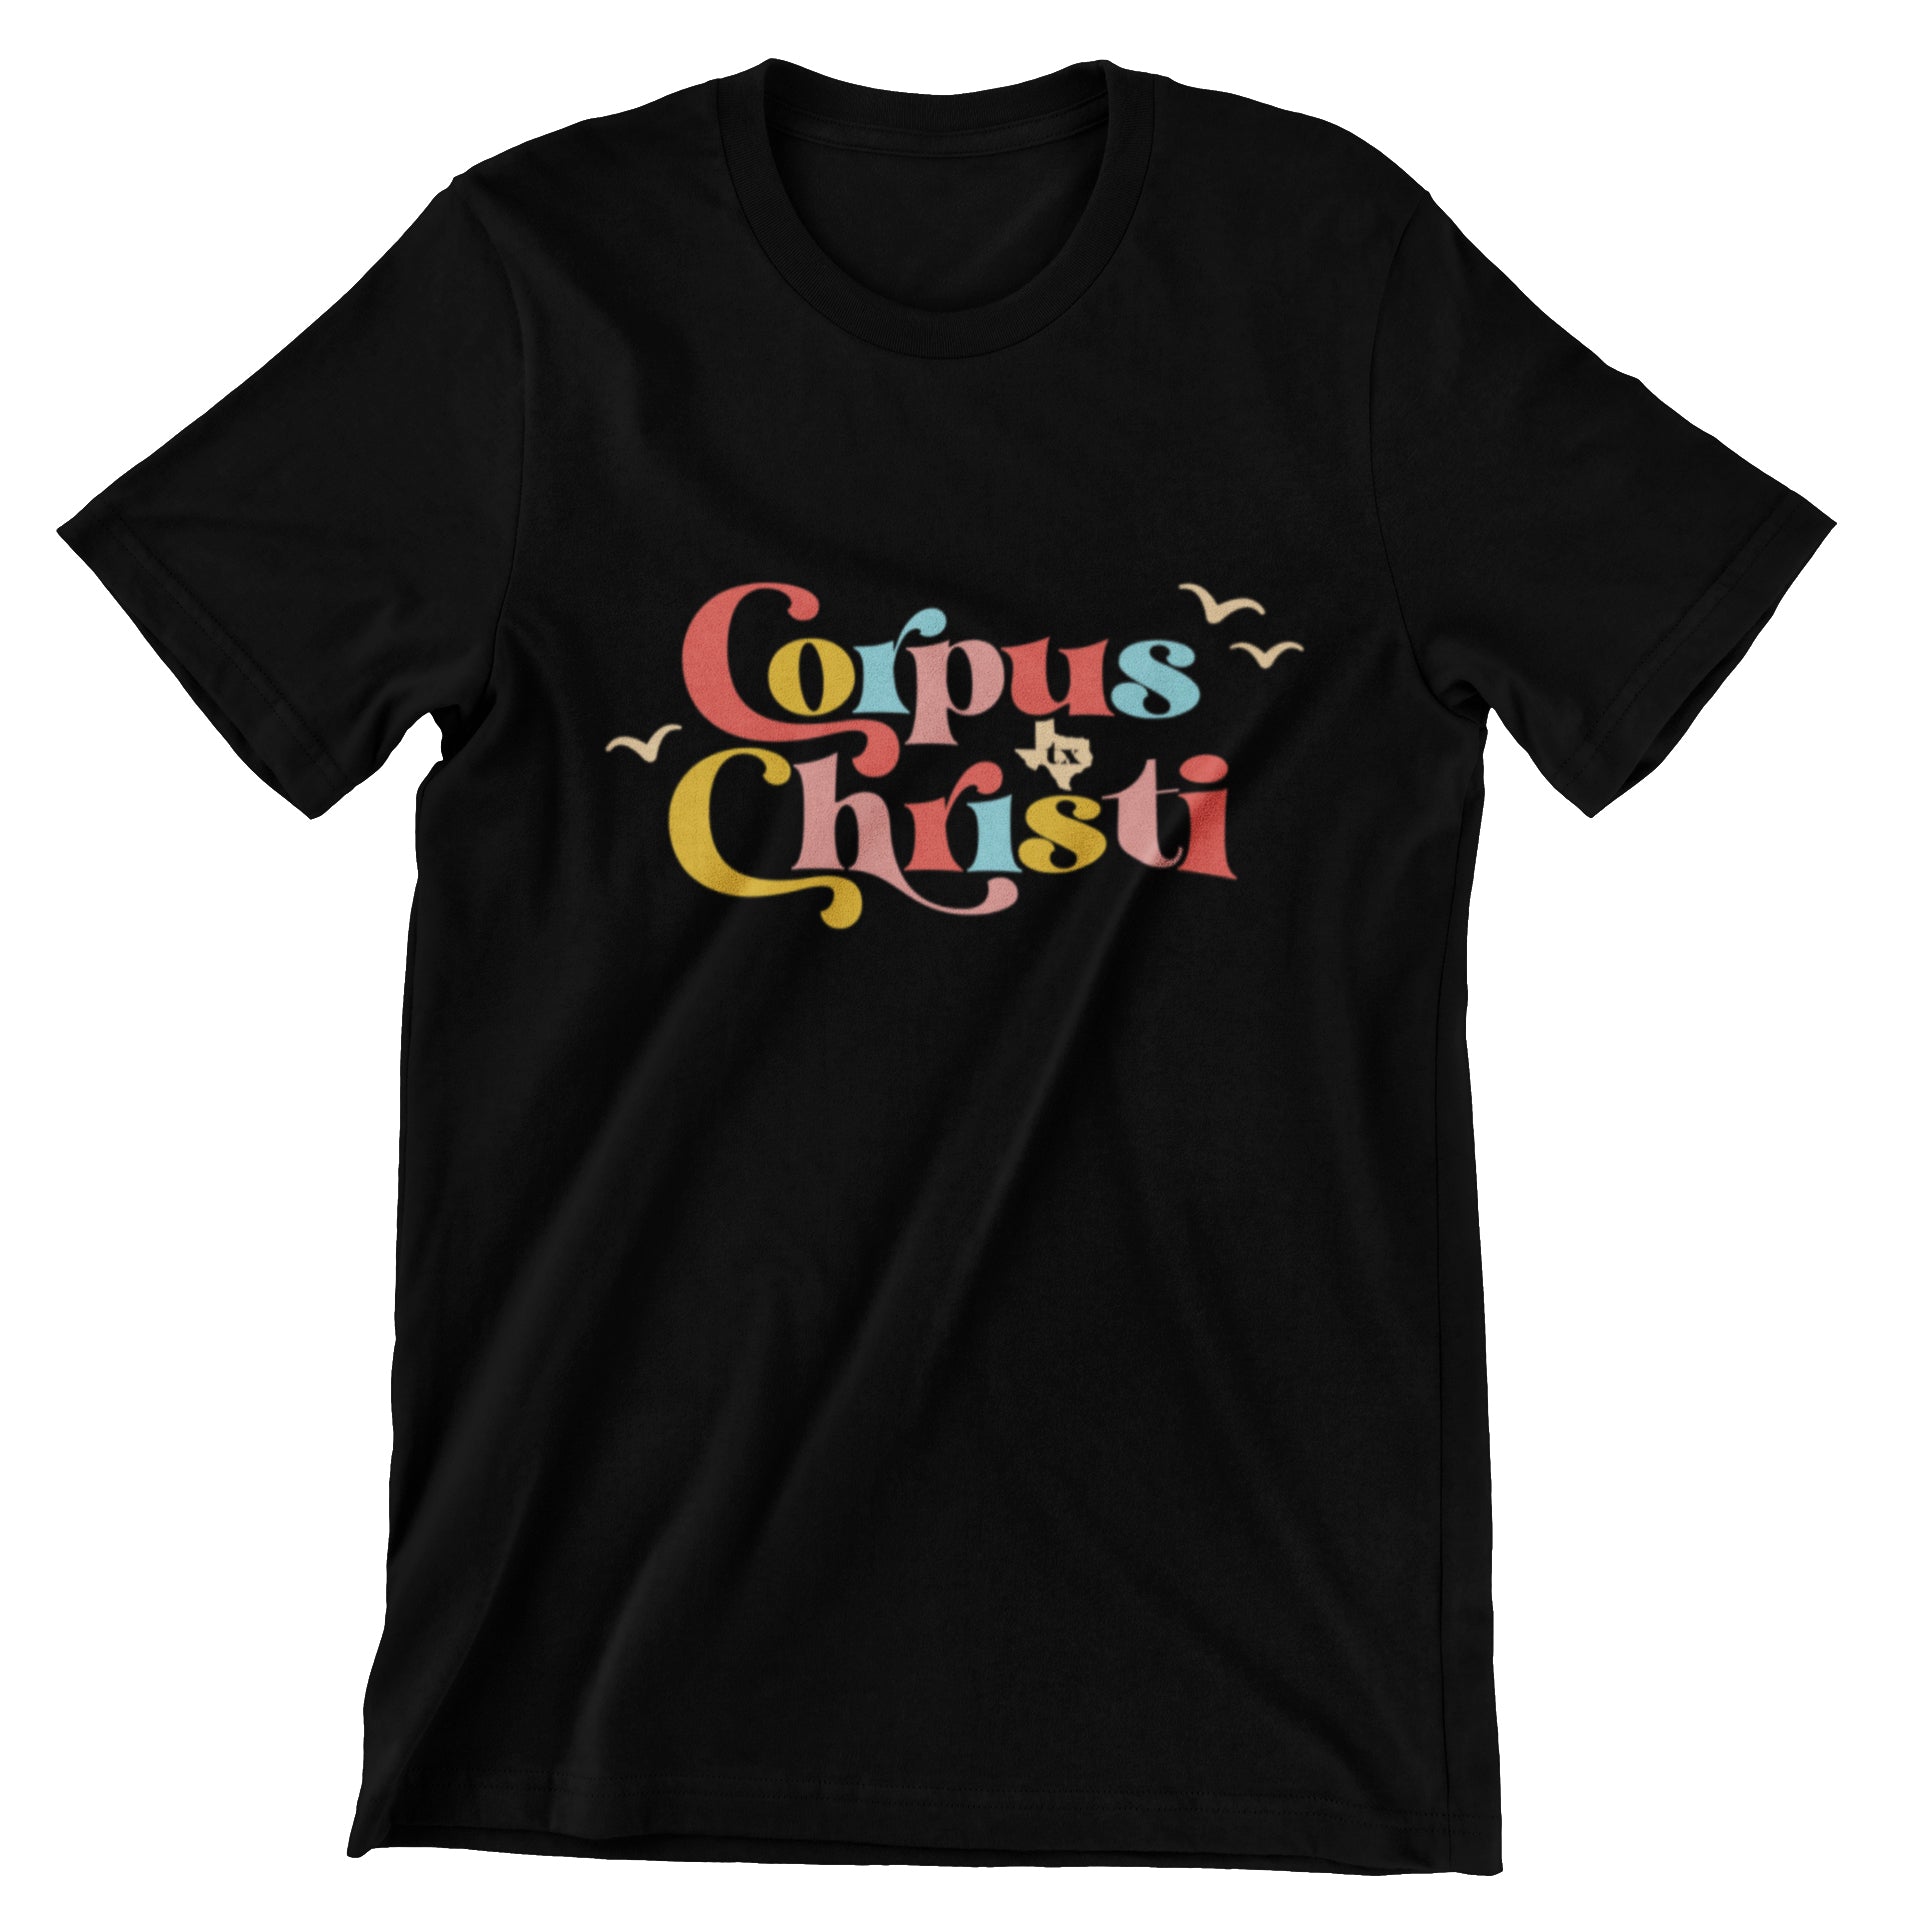 Color Me CC T-Shirt